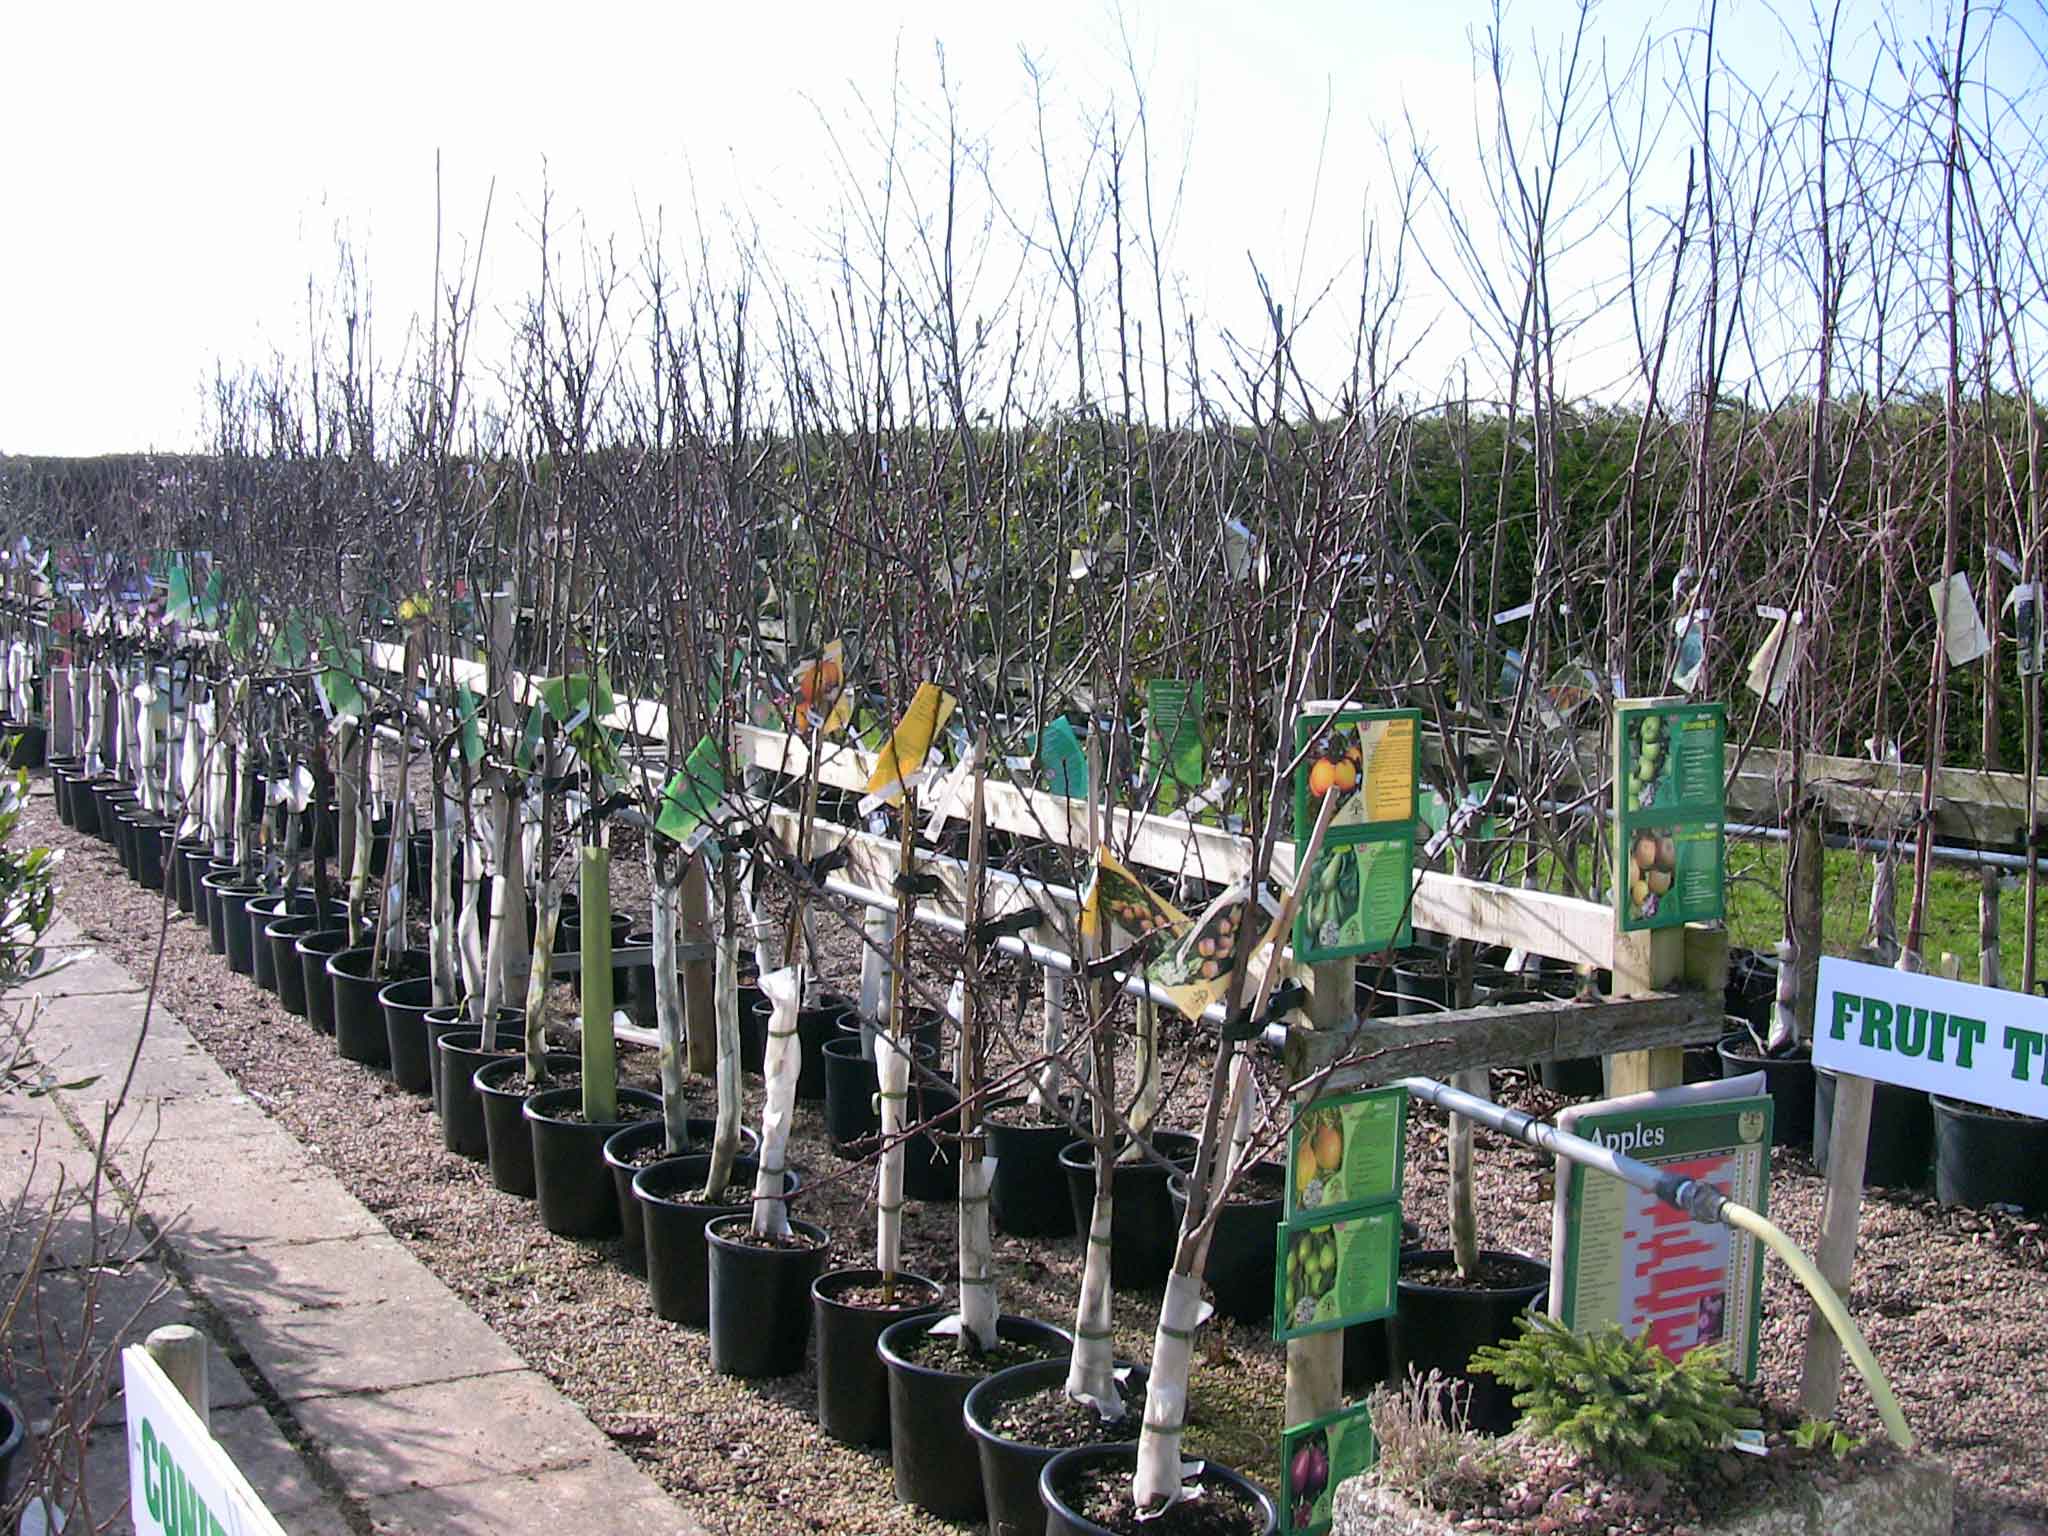 Fruit trees at Retford, Notts